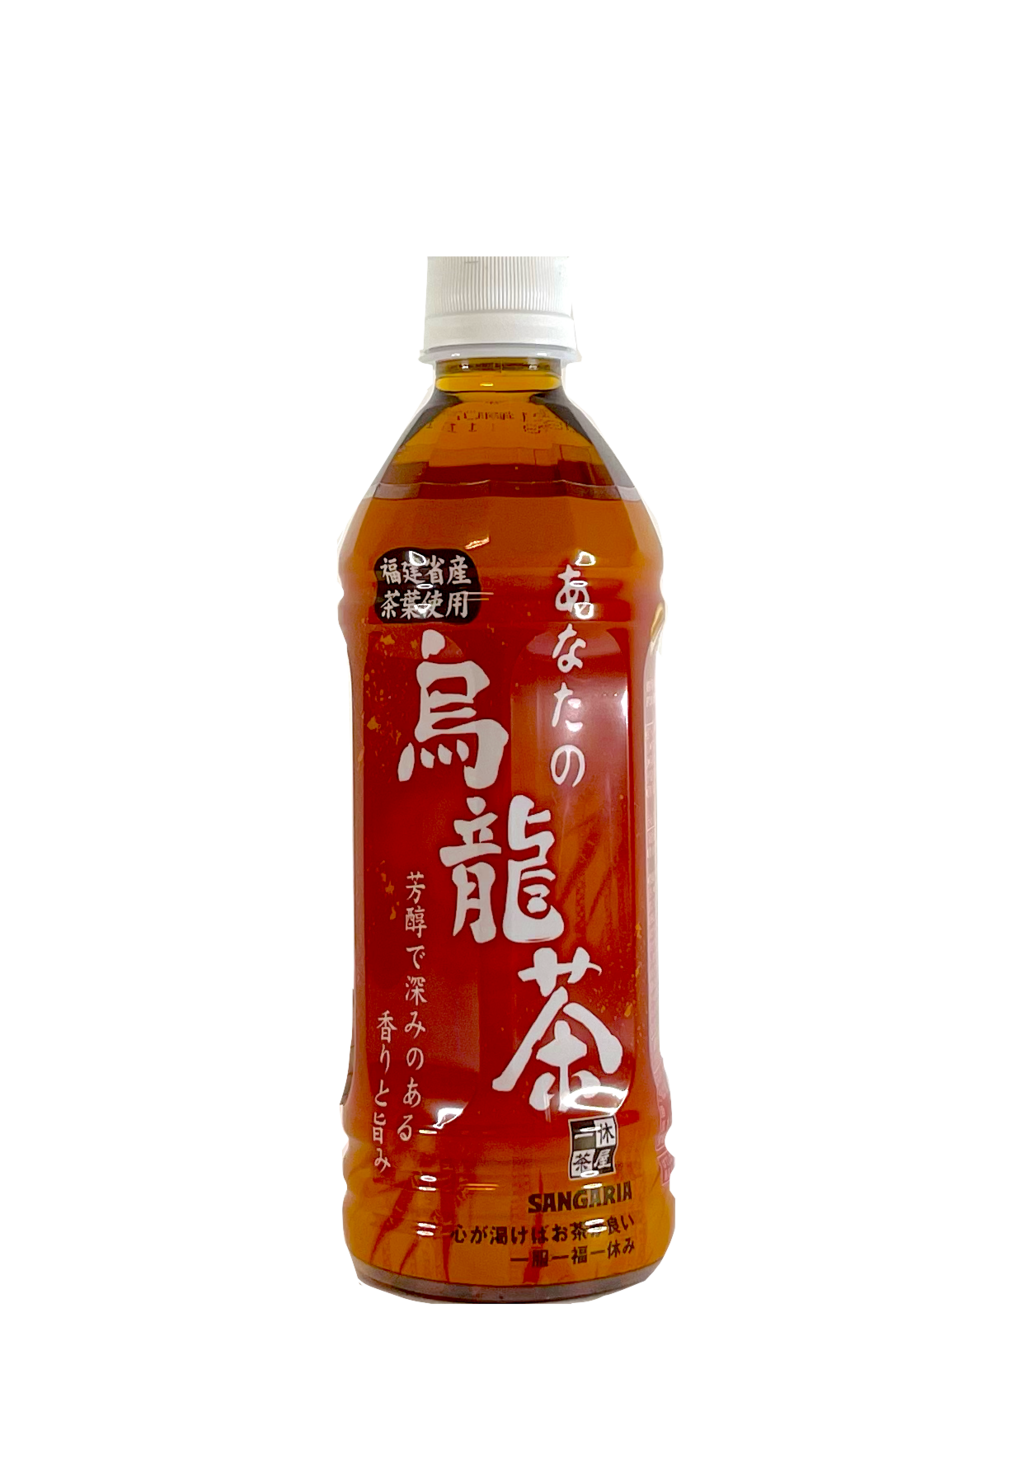 乌龙茶 500ml Sangaria 日本